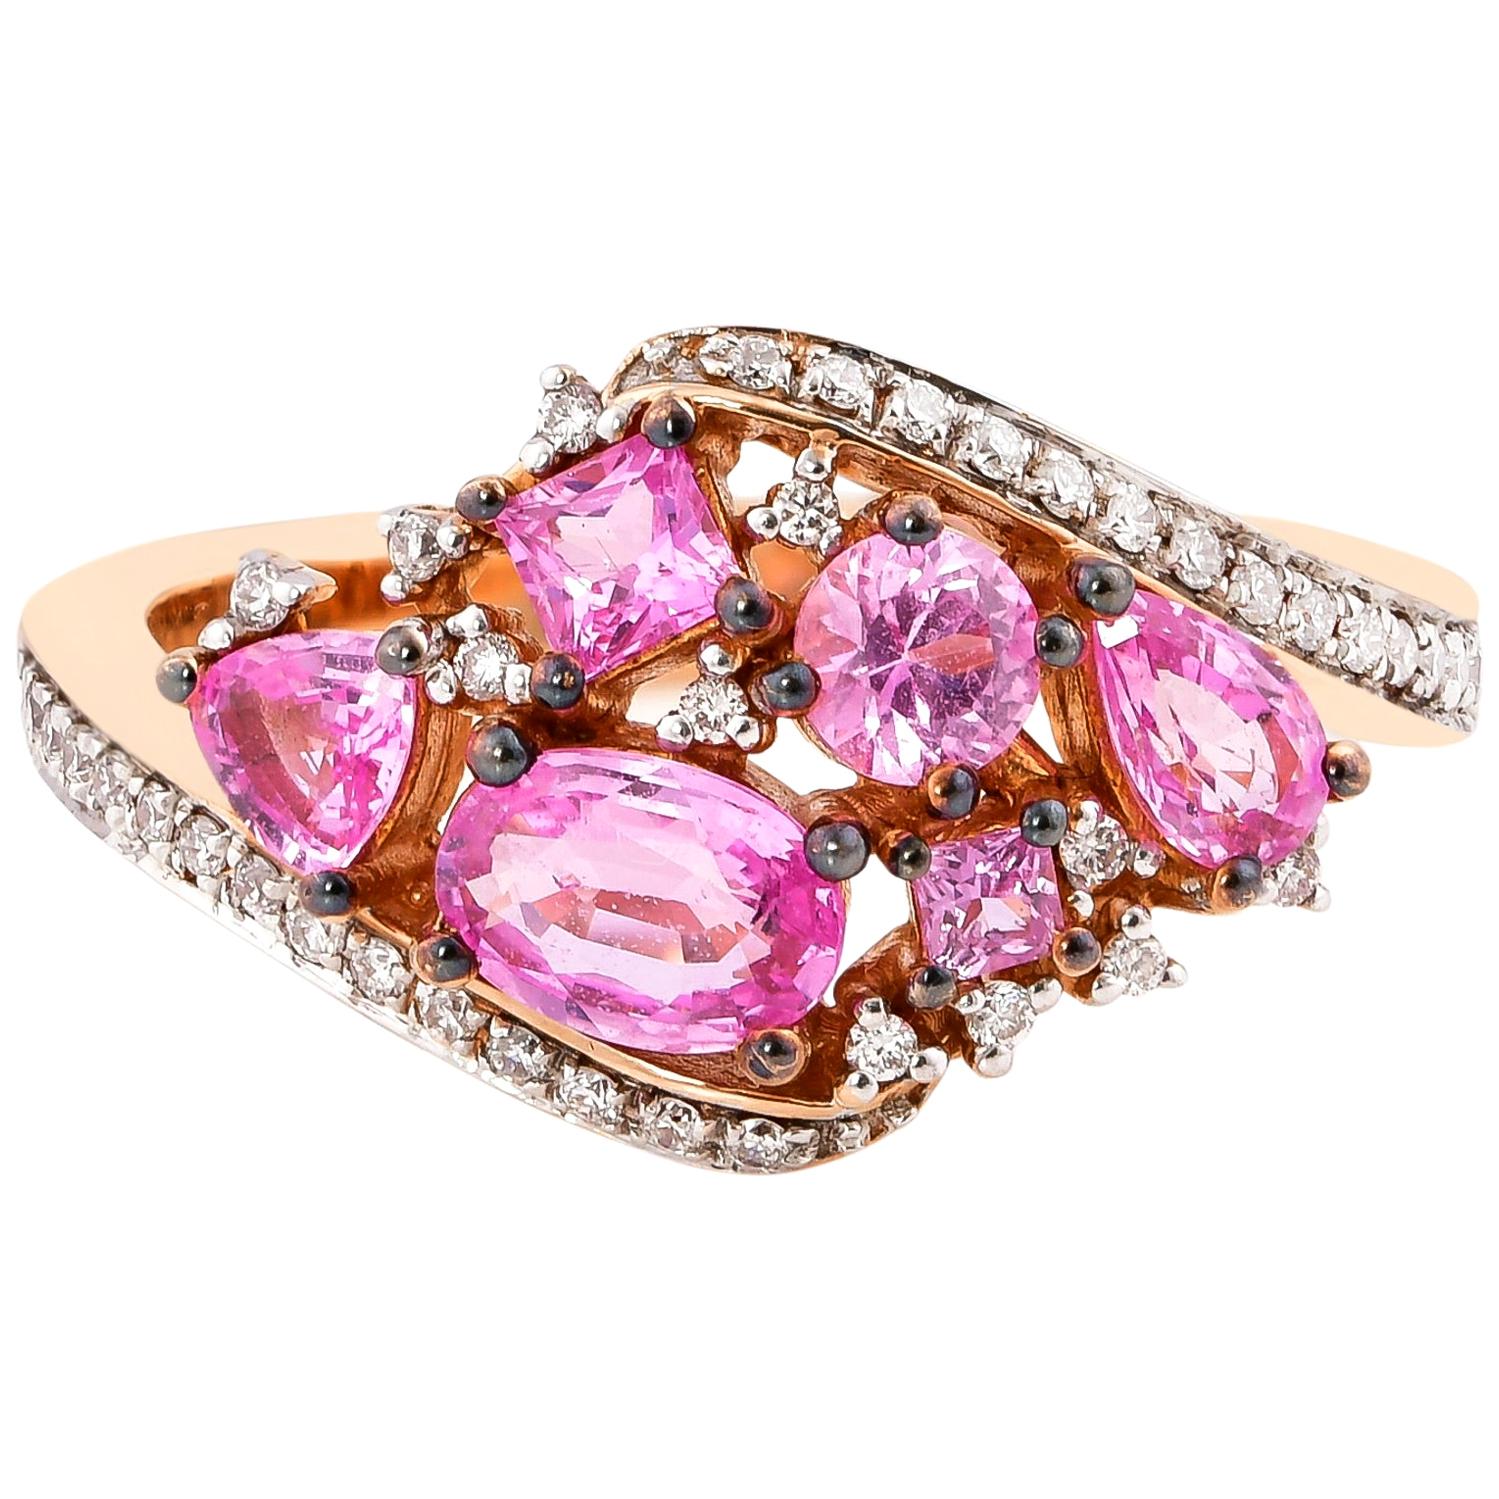 1.4 Carat Pink Sapphire Ring in 18 Karat Rose Gold with Diamond